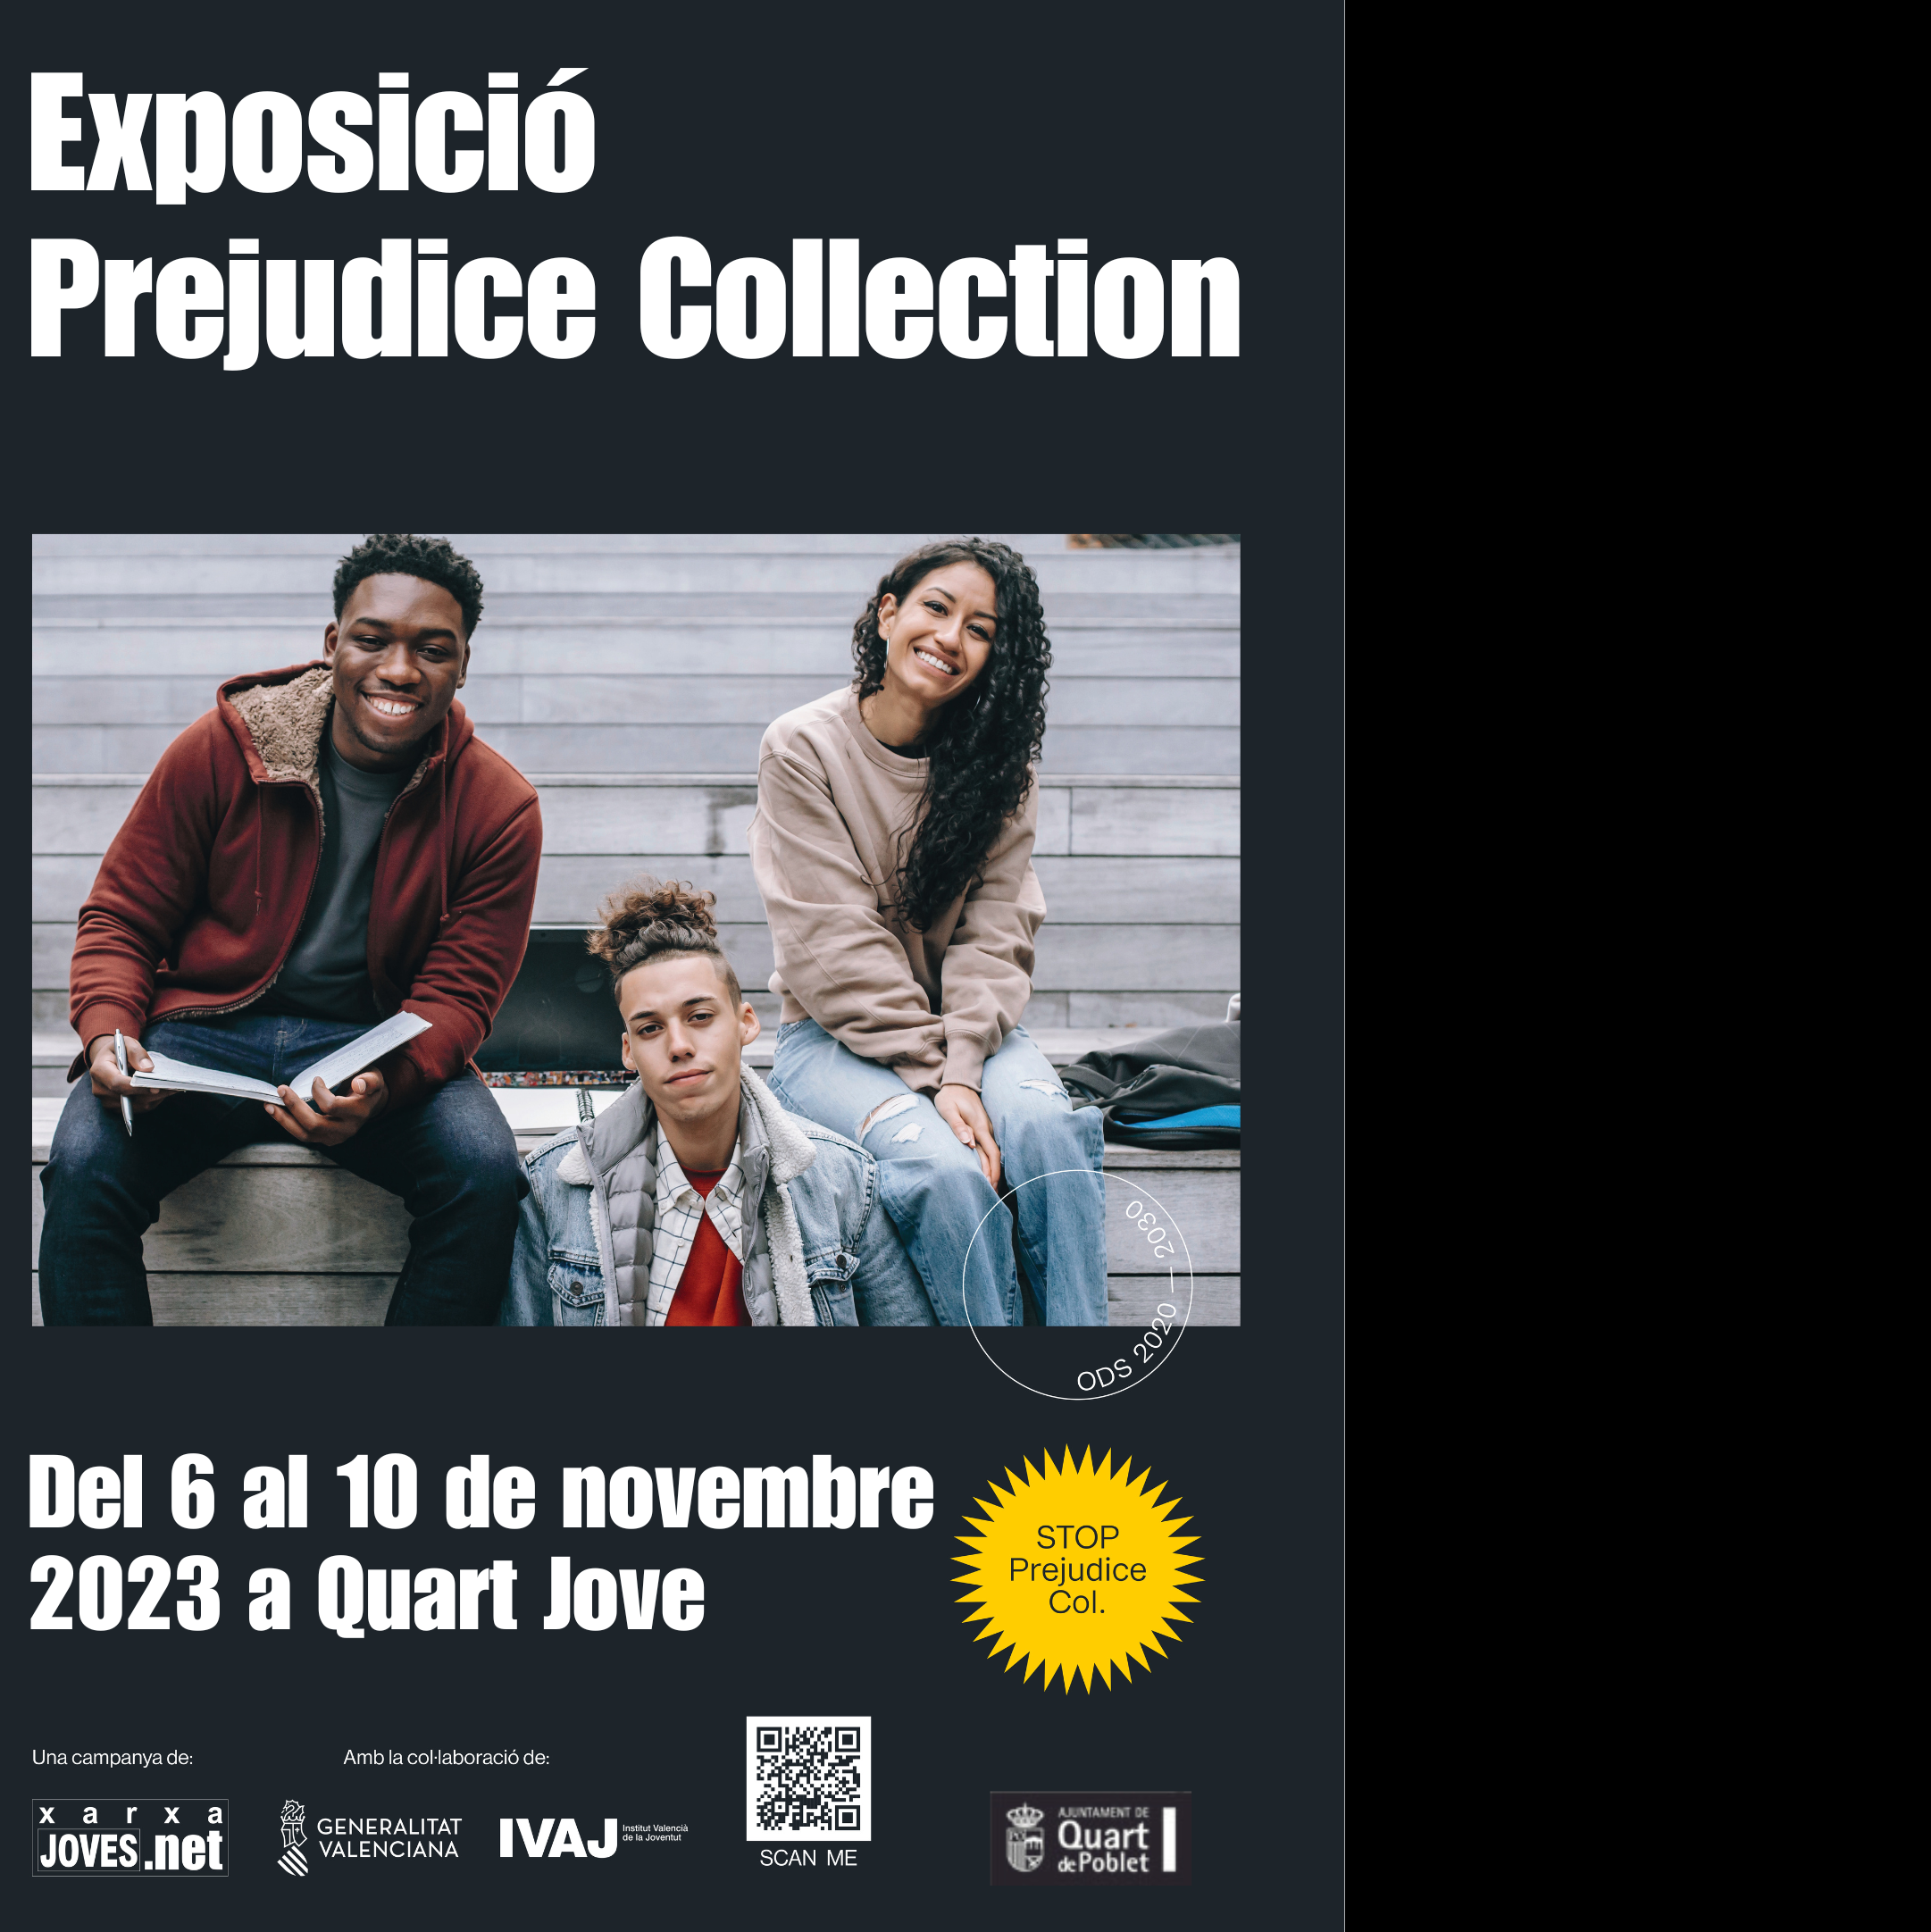 Expo Prejudice Collection